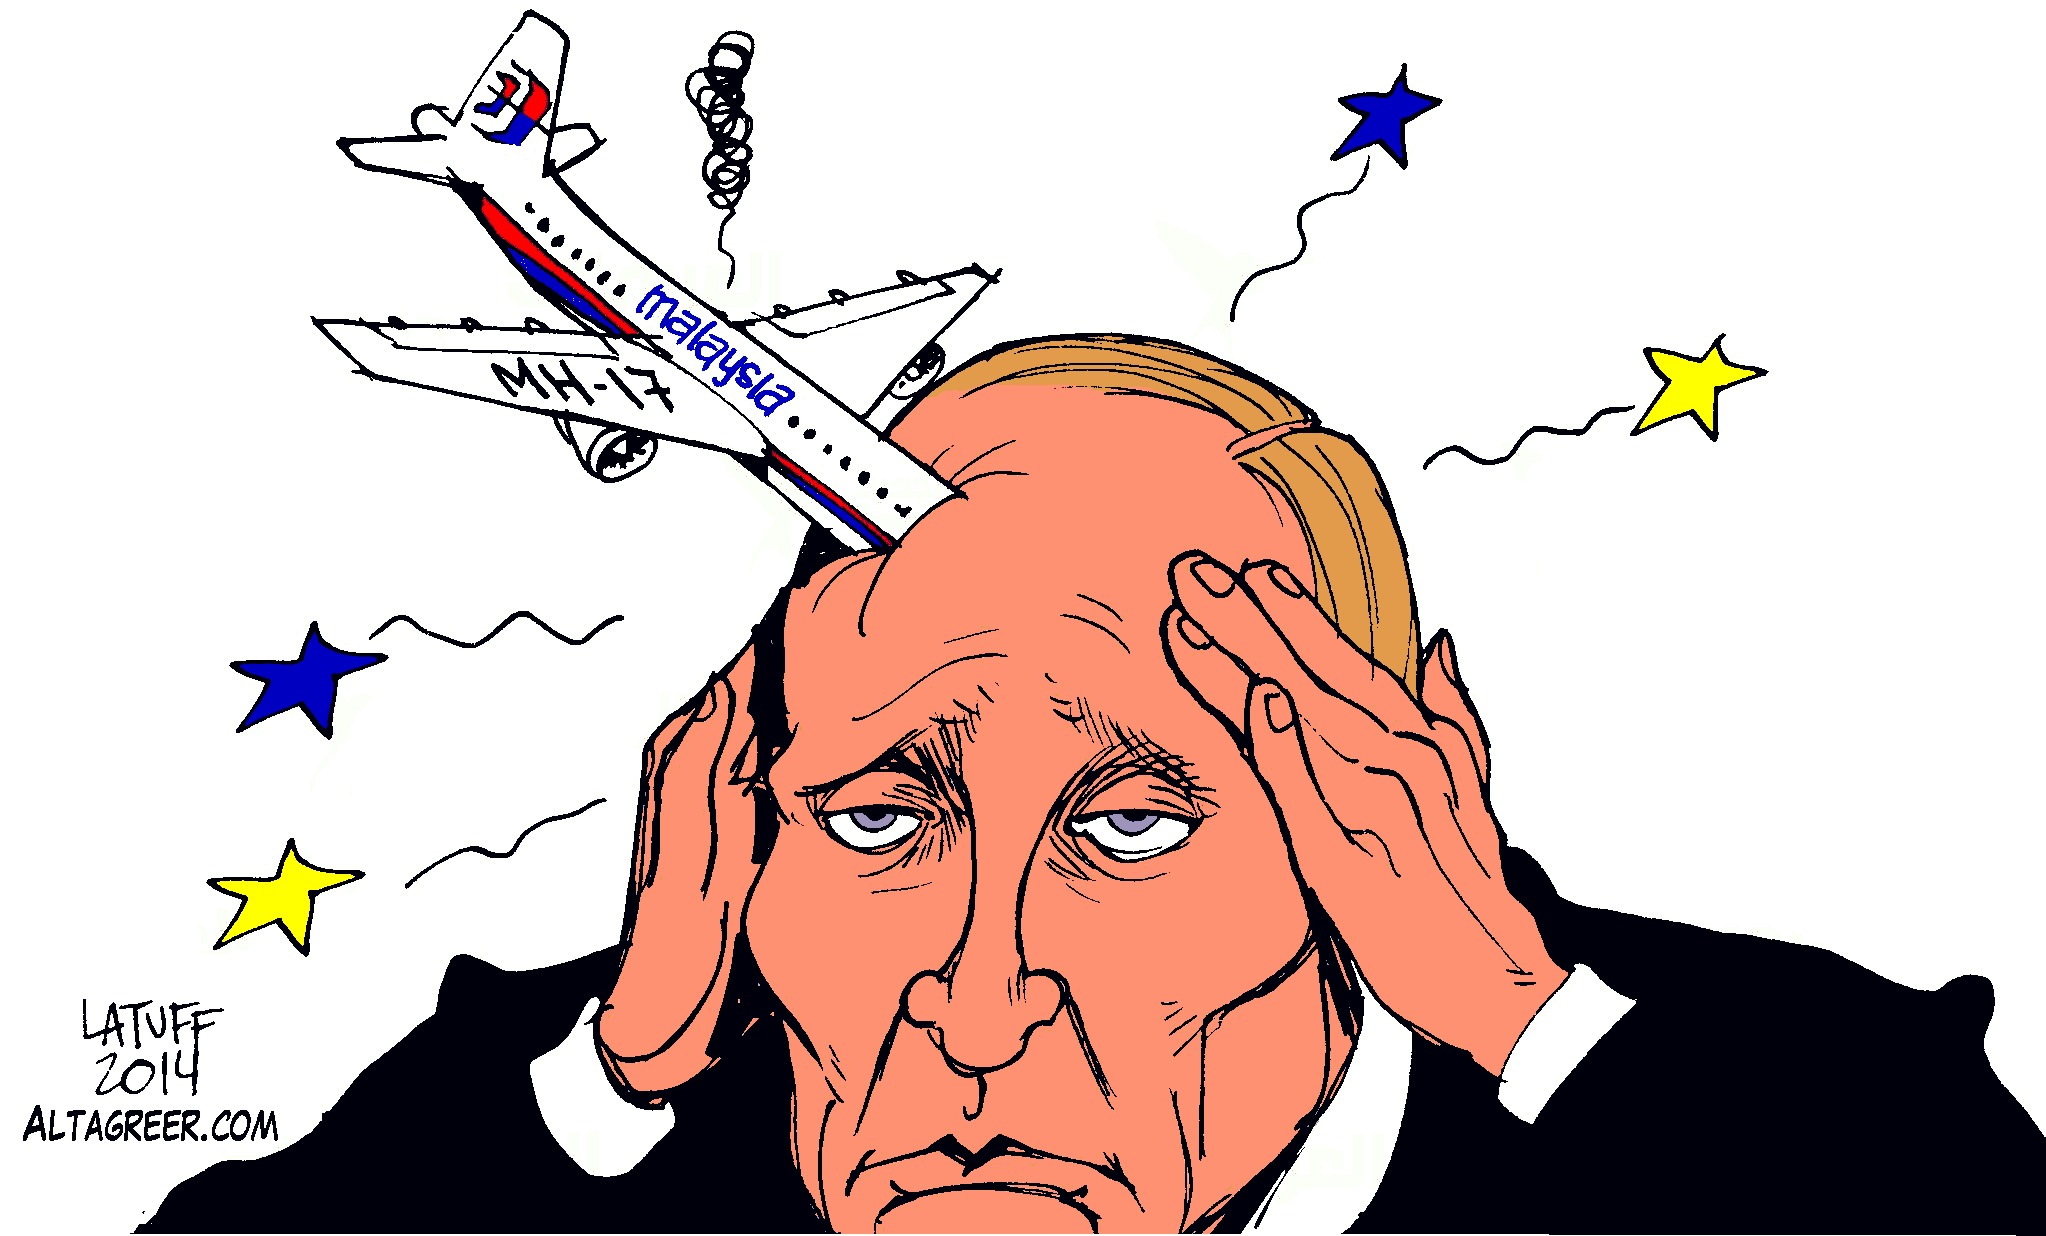 putin-new-headache-passenger-jet-shot-down-in-ukraine-altagreer.gif